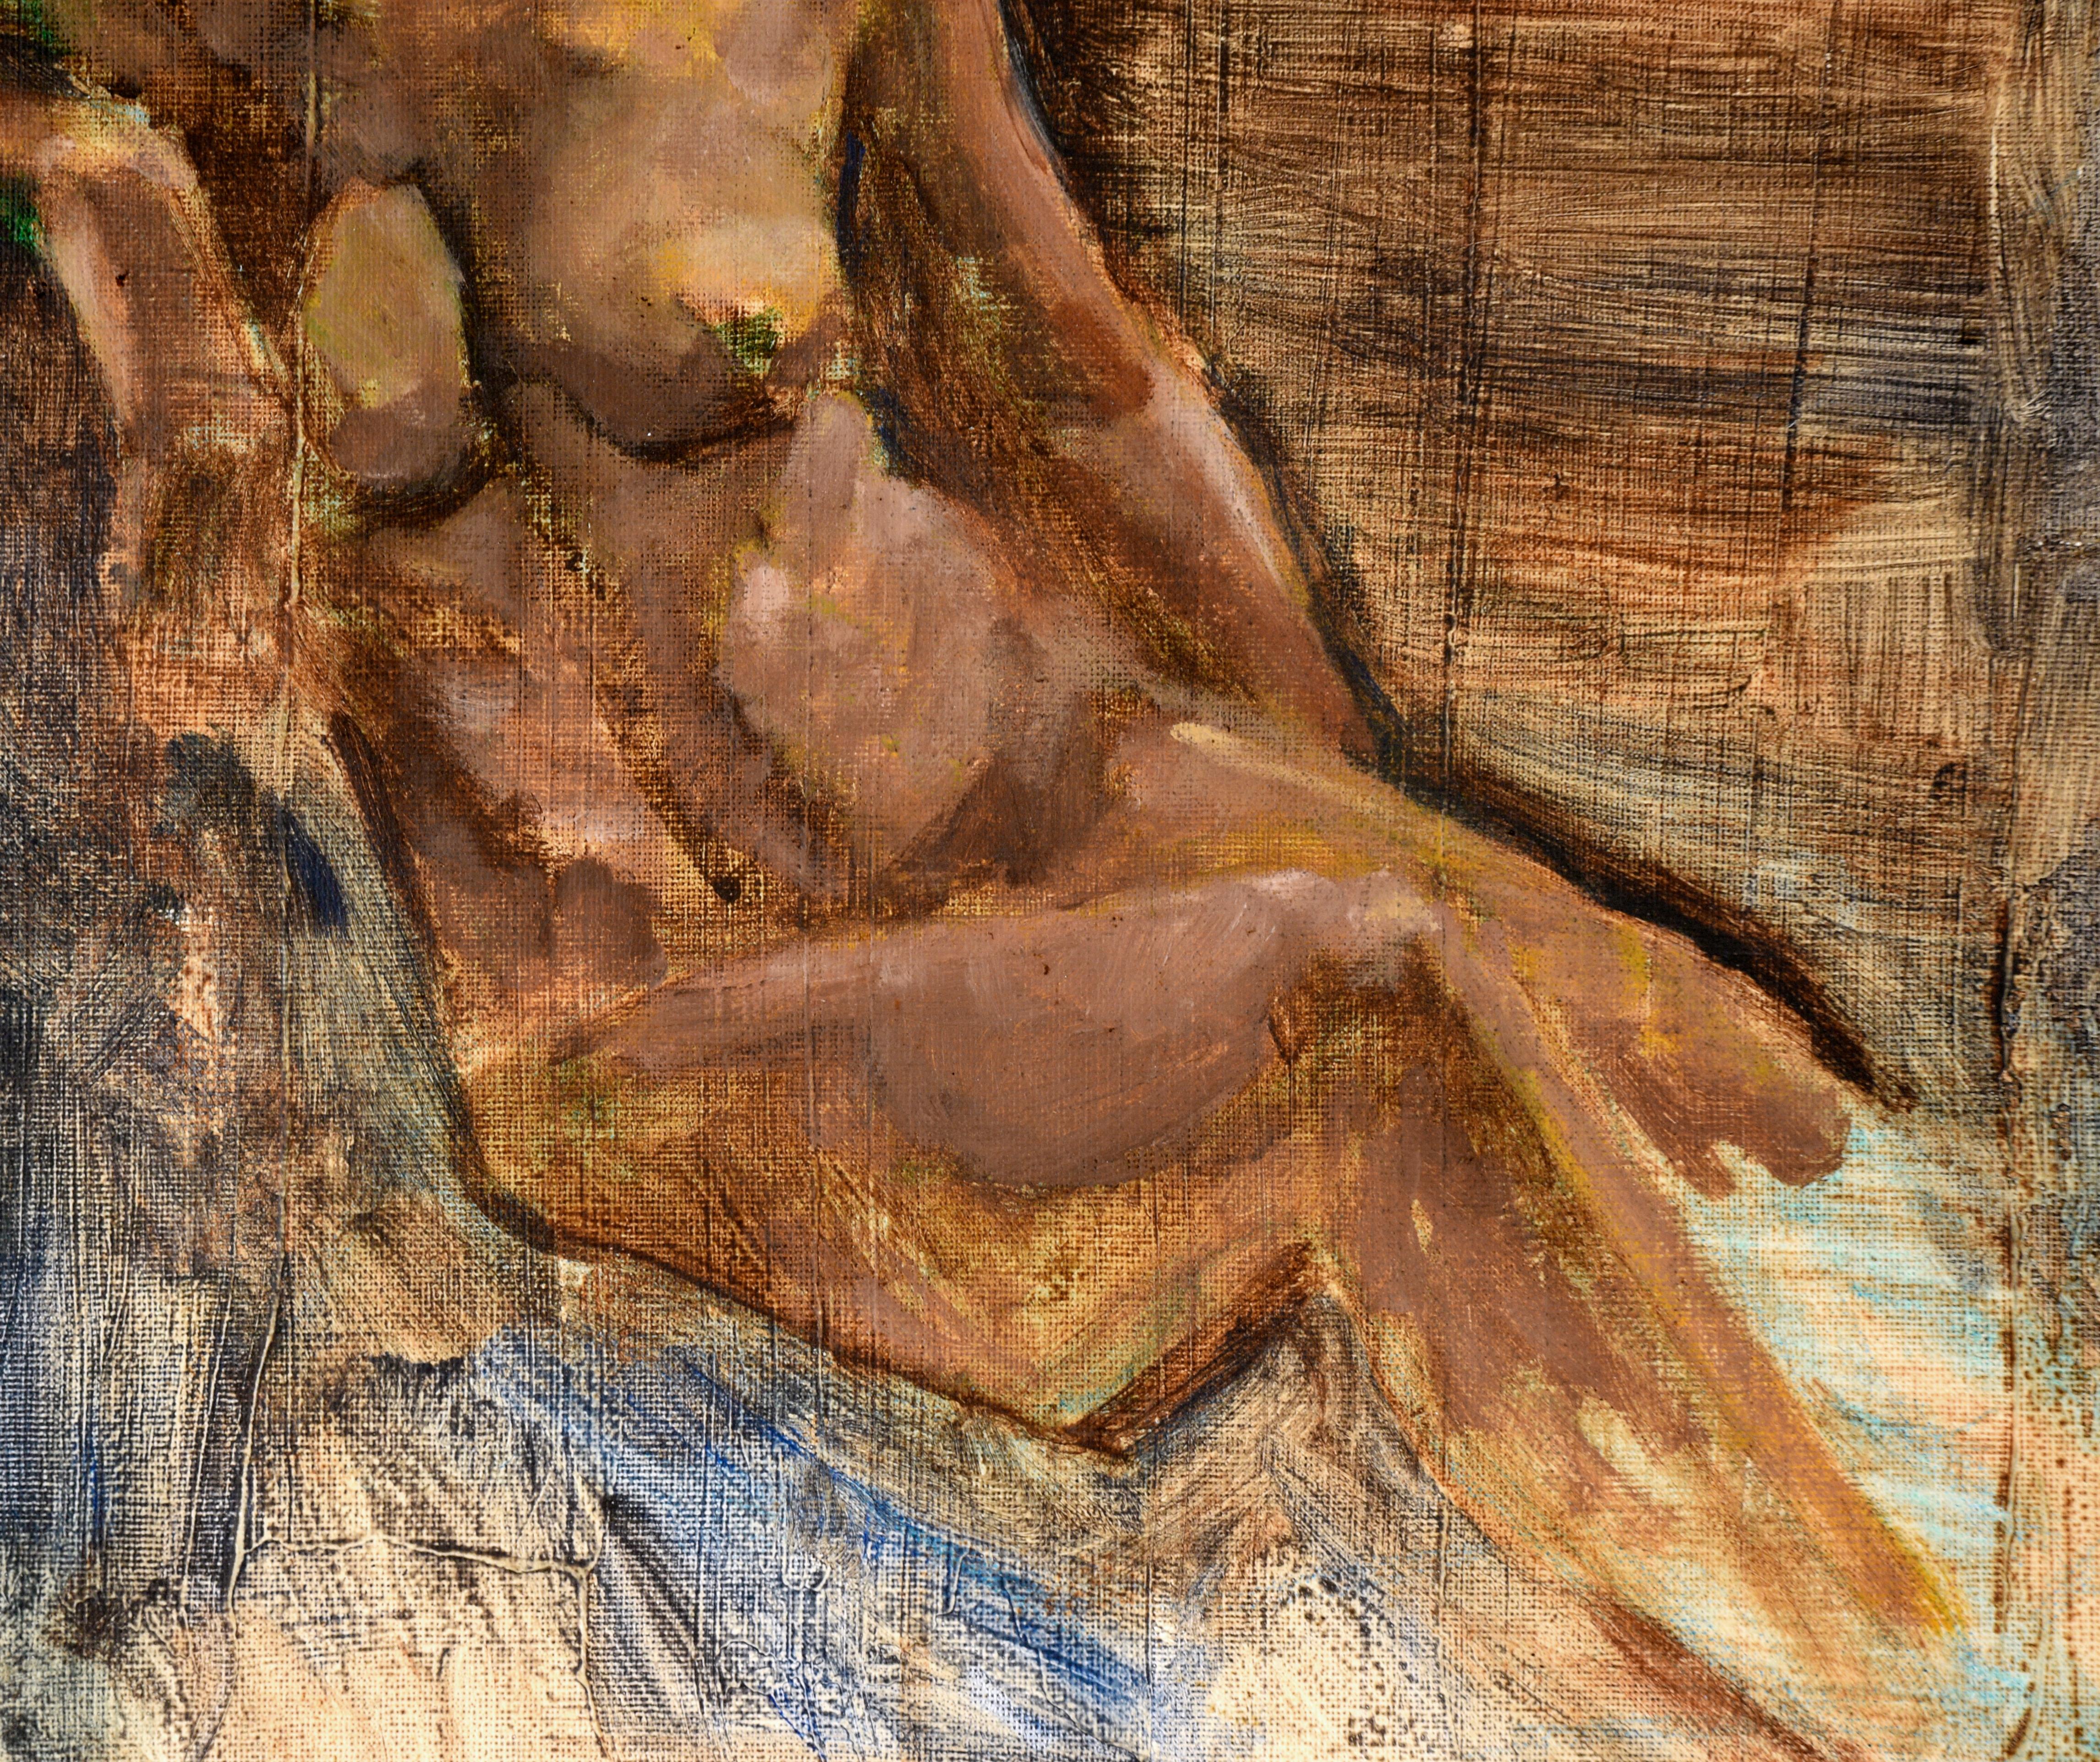 Étude de nu par Andy Smith (américain, 20e siècle). Une femme est assise, légèrement penchée vers la gauche de la composition. Le fond passe d'un rouge rouille à un bleu foncé, changeant de couleur derrière la figure. Certains de ses traits sont